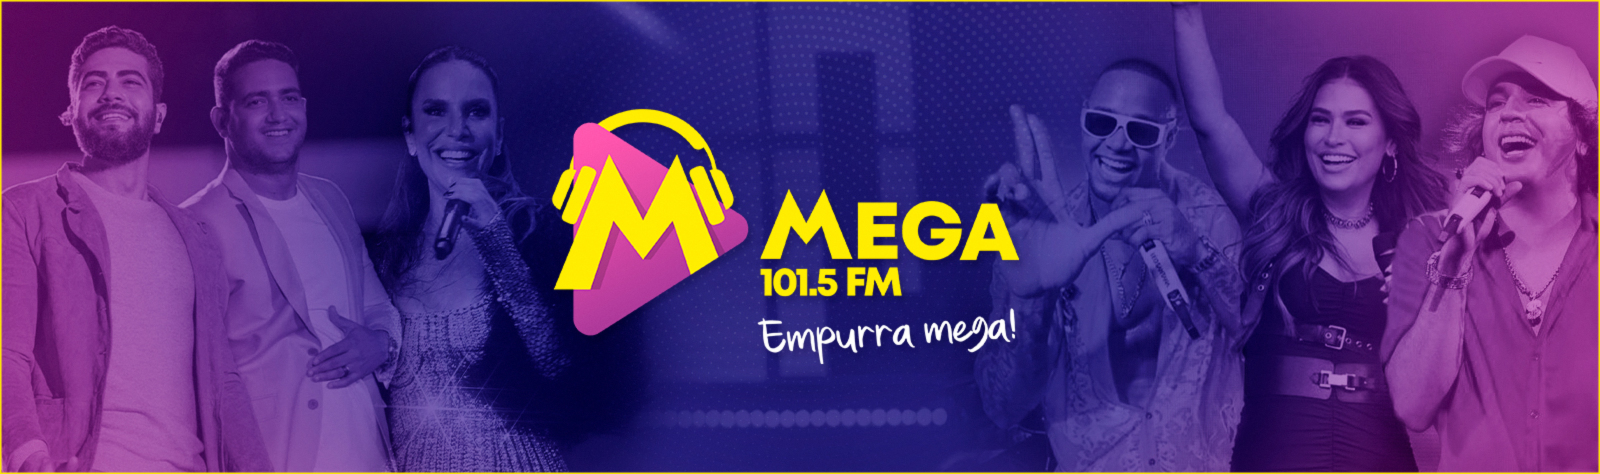 MEGA FM 